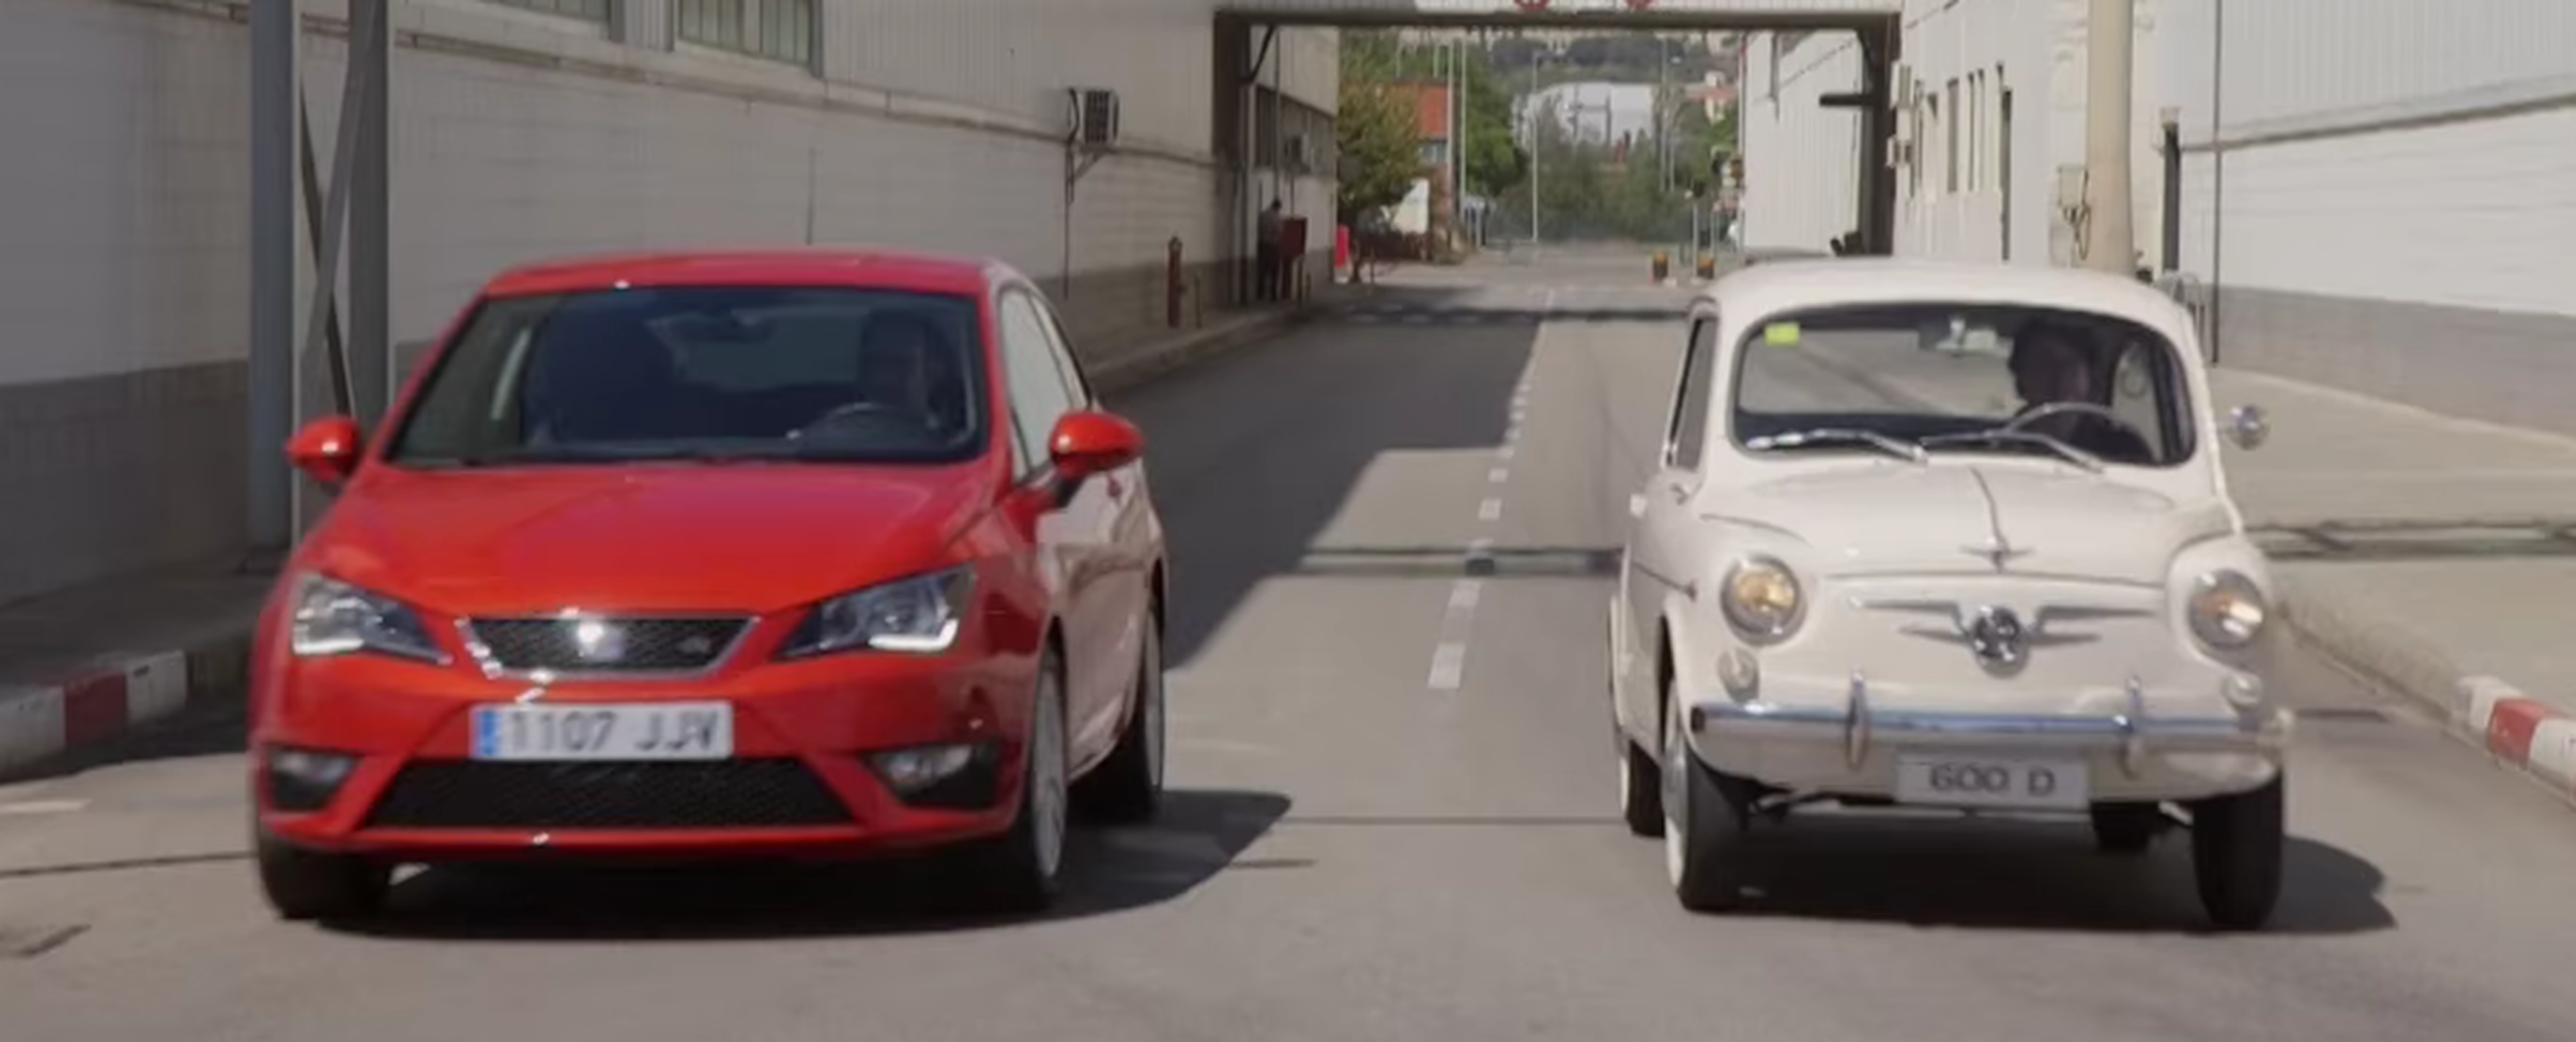 VÍDEO: Seat 600 contra Seat Ibiza FR: la evolución de carrocerías